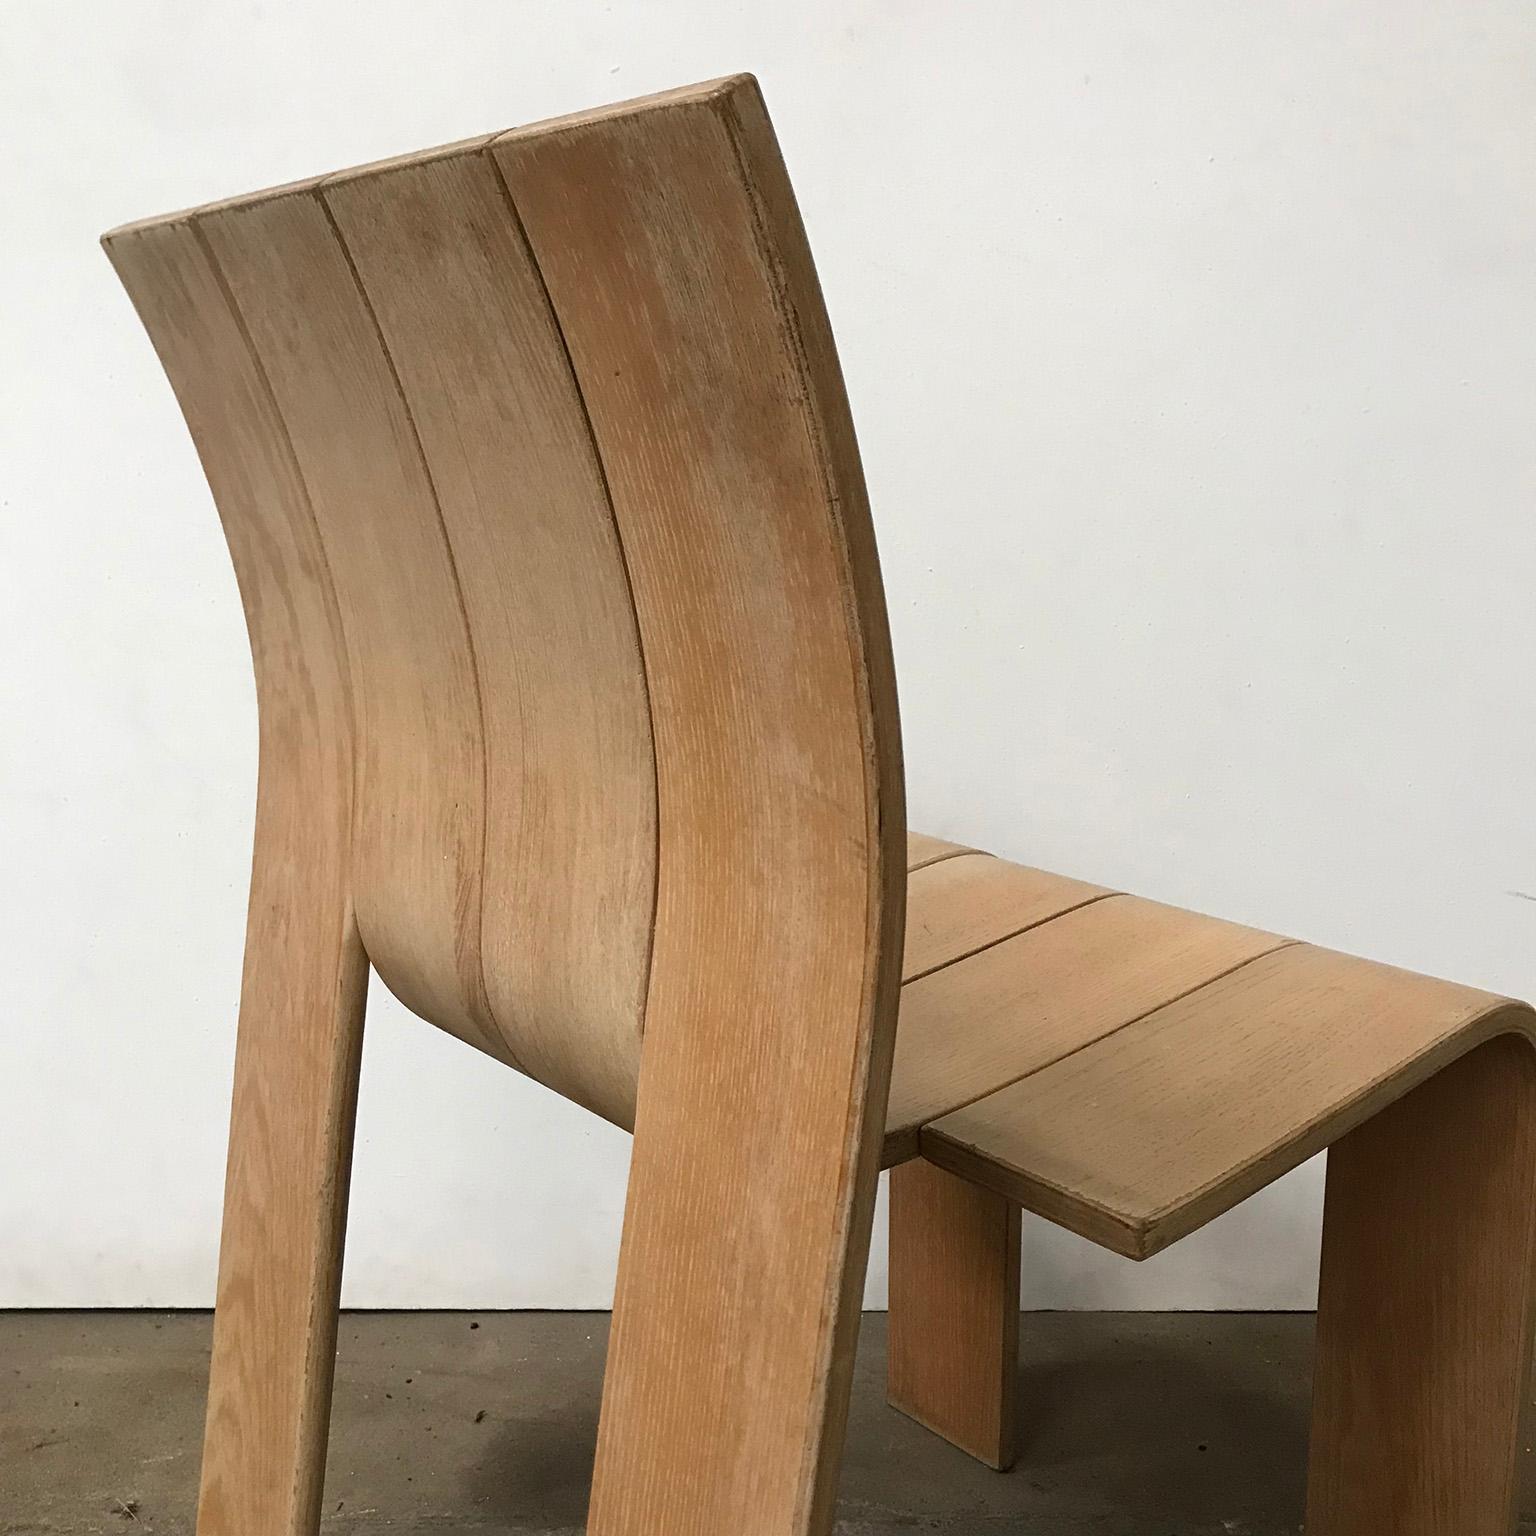 1974, Gijs Bakker, Castelijn, Varnished Stackable Bended Wood Strip Chair 2